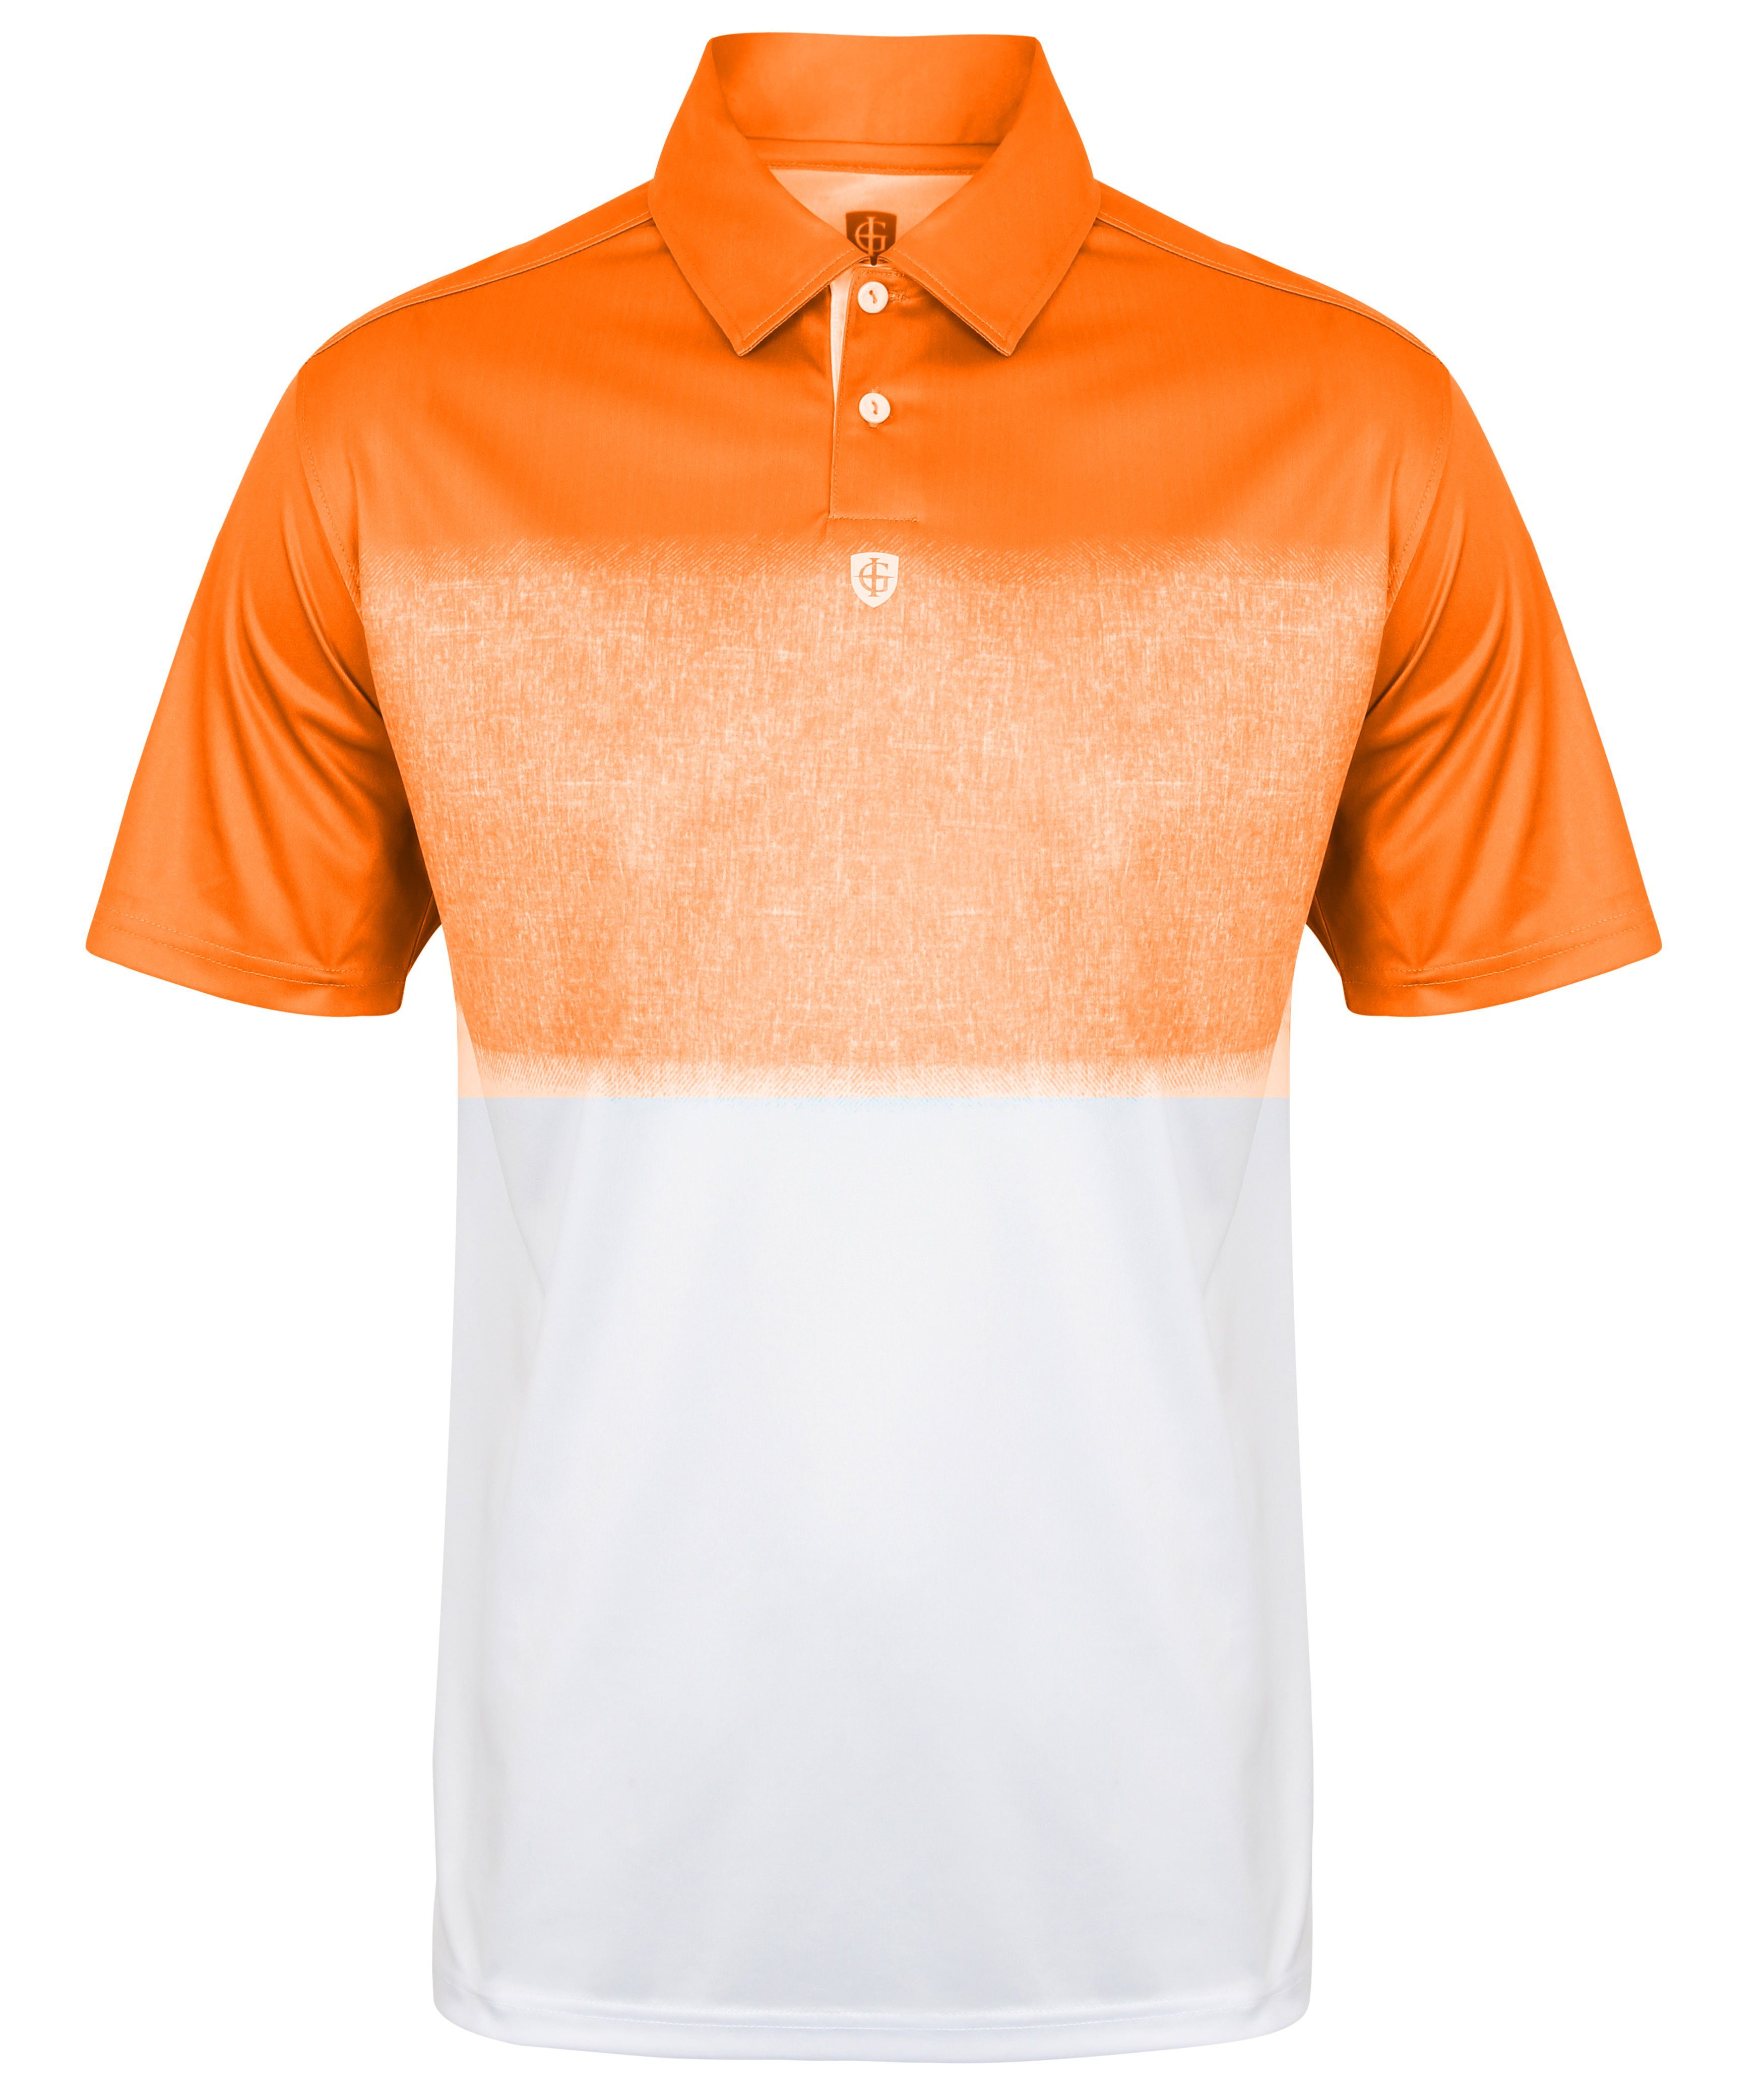 ISLAND GREEN Poloshirt Herren Poloshirt atmungsaktives Hightech-Material 1650 - Orange